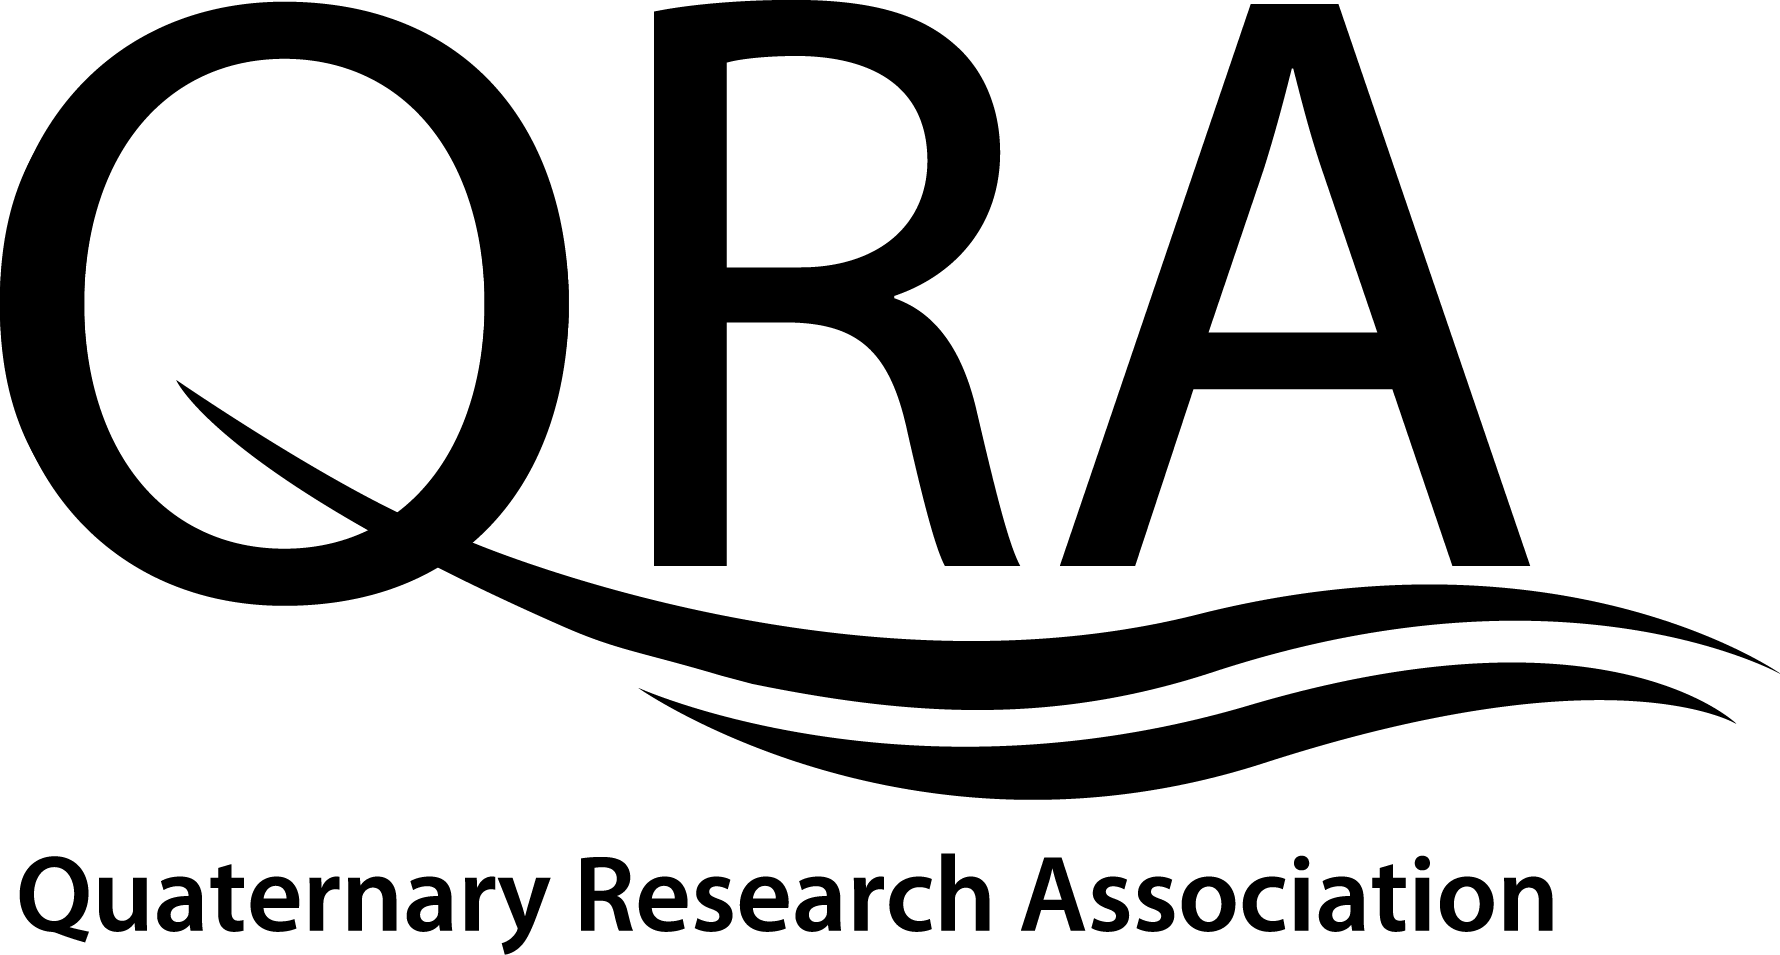 Quaternary Research Association logo - black